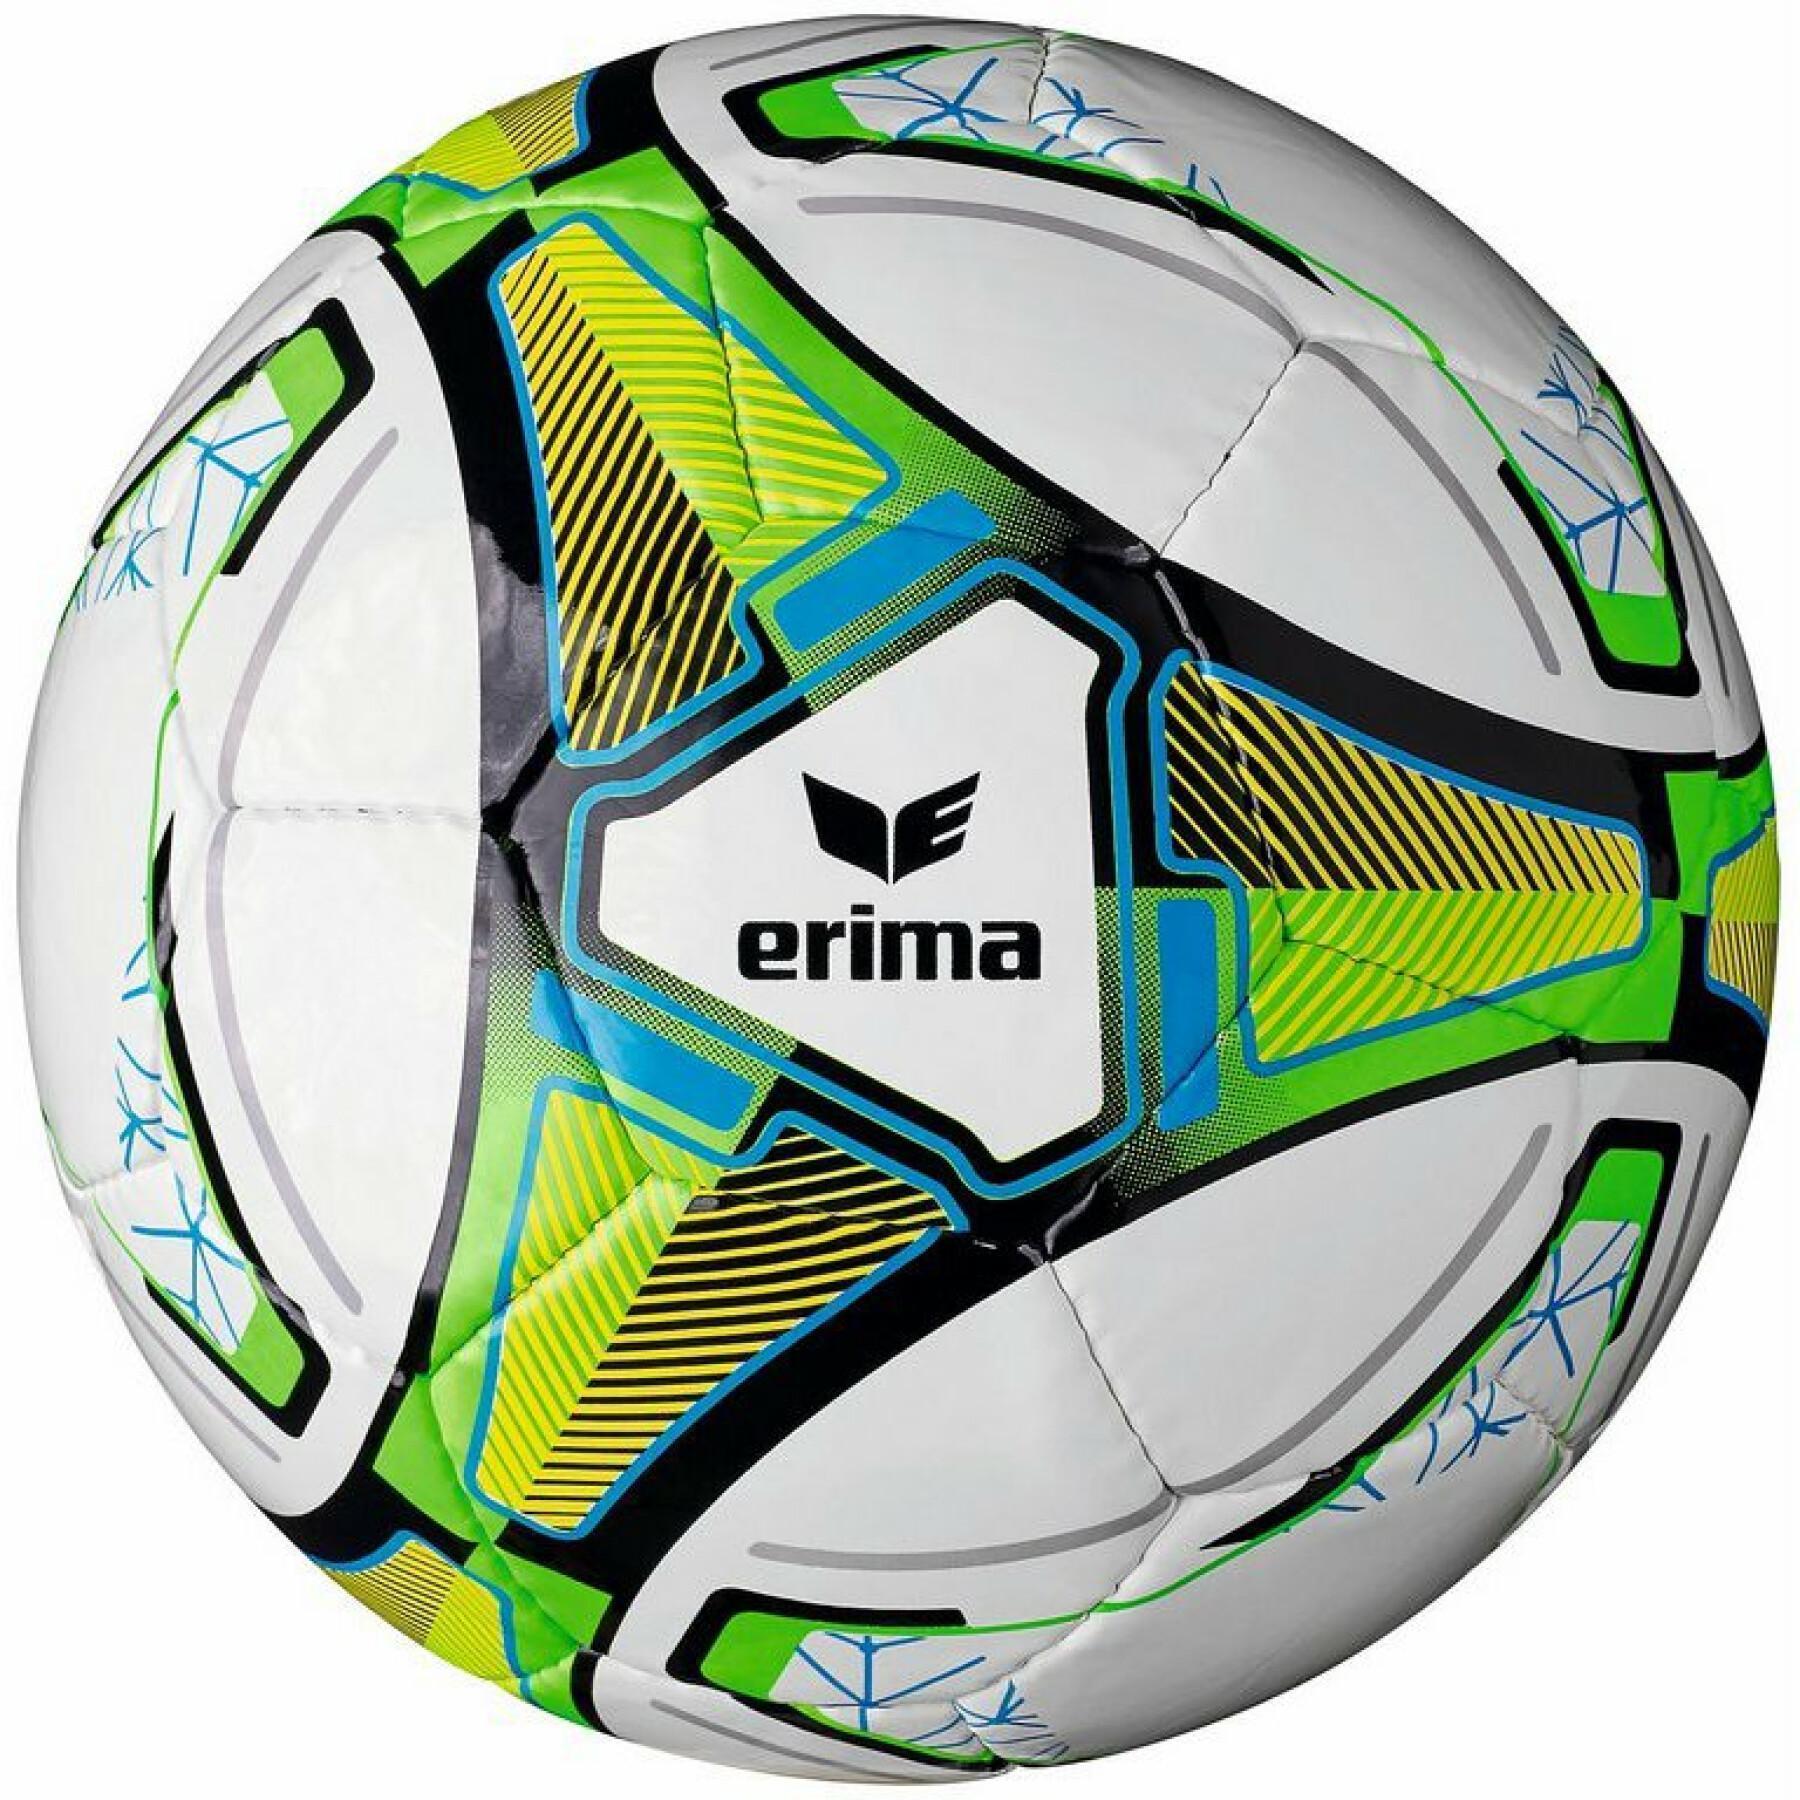 Ballon de football Erima Allround Lite 350